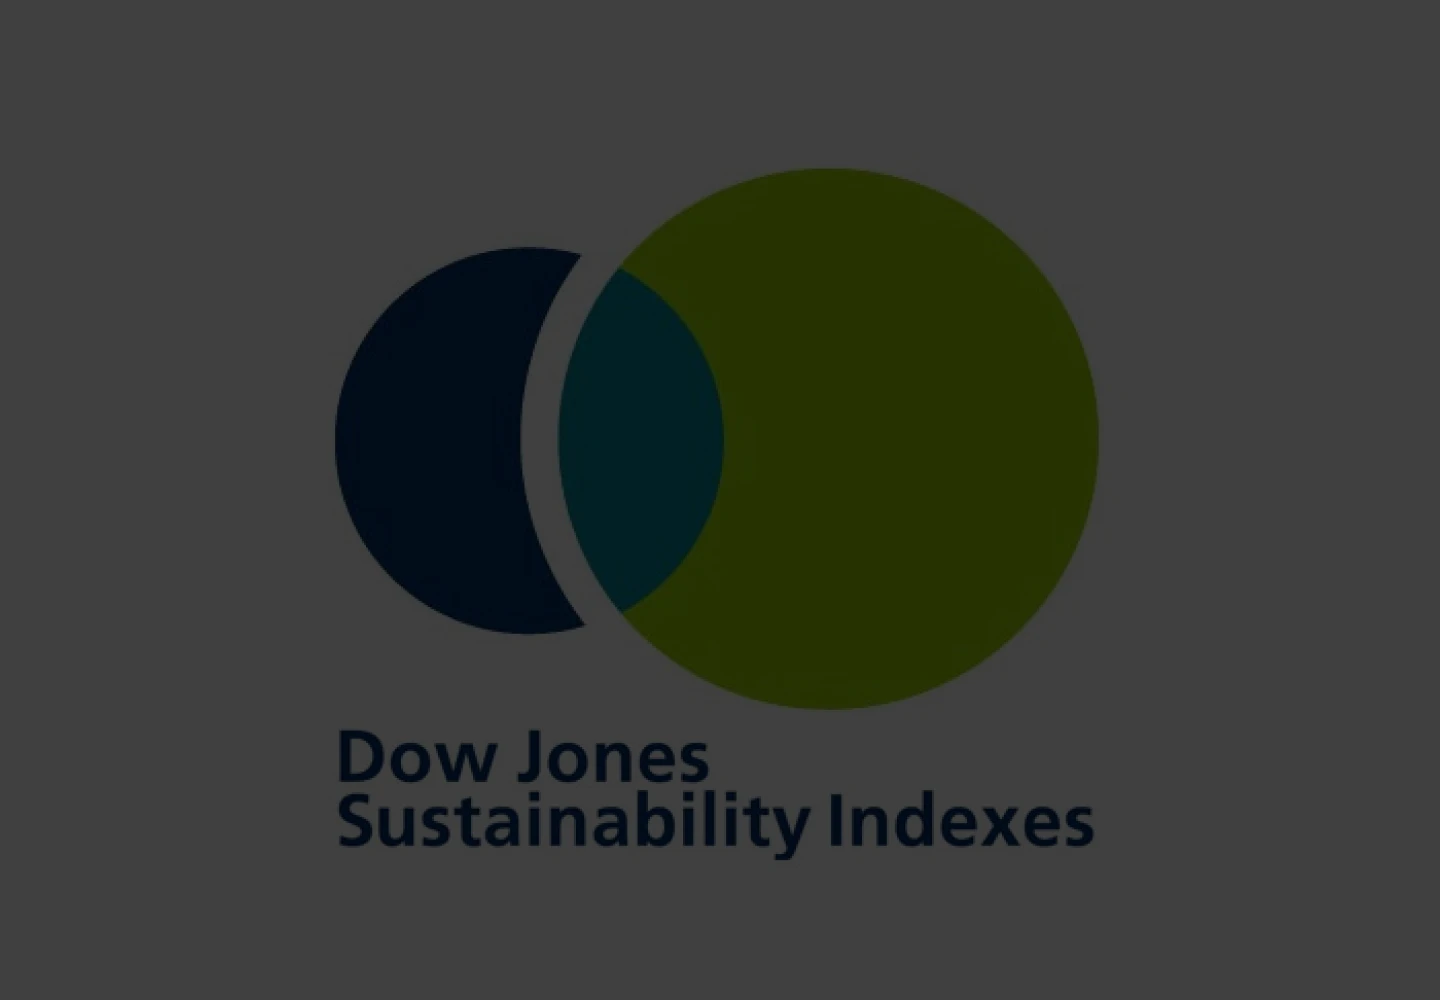 Logotipo do Índice de Sustentabilidade Dow Jones, com nome em inglês: Dow Jones Sustainability Indexes.